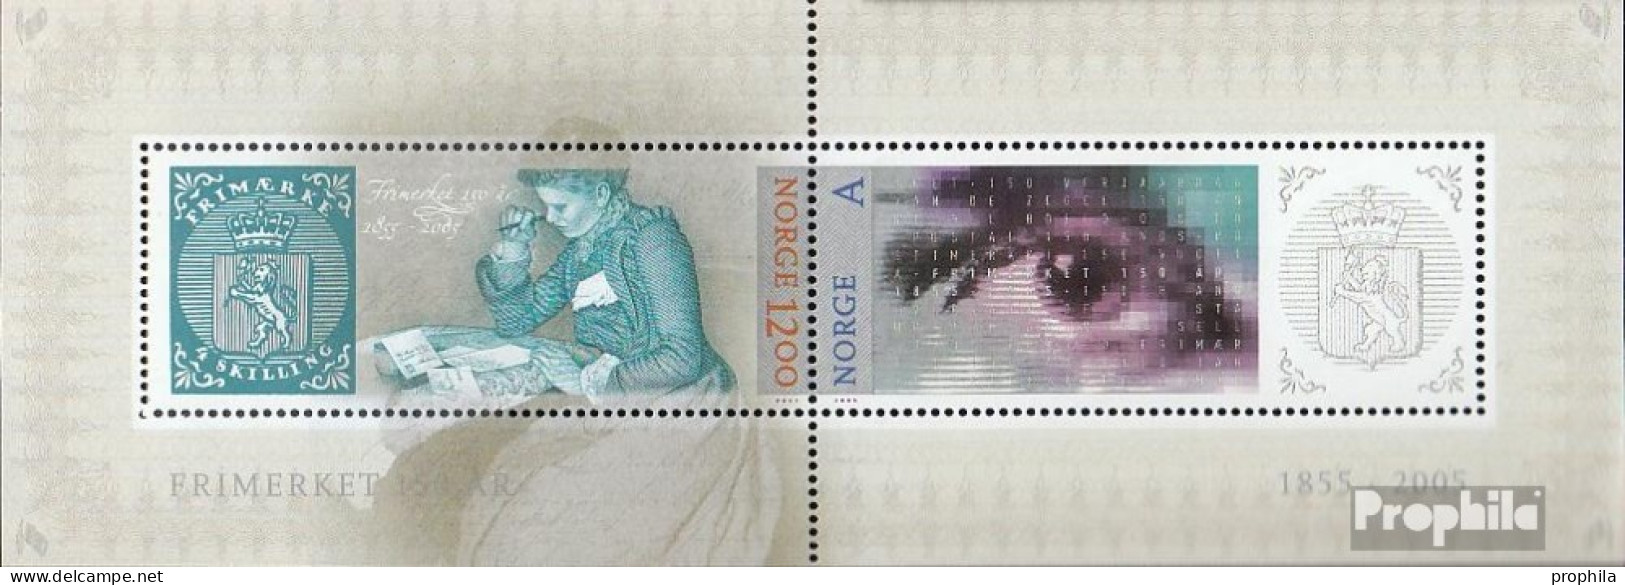 Norwegen Block29 (kompl.Ausg.) Postfrisch 2005 Norwegische Briefmarke - Ongebruikt